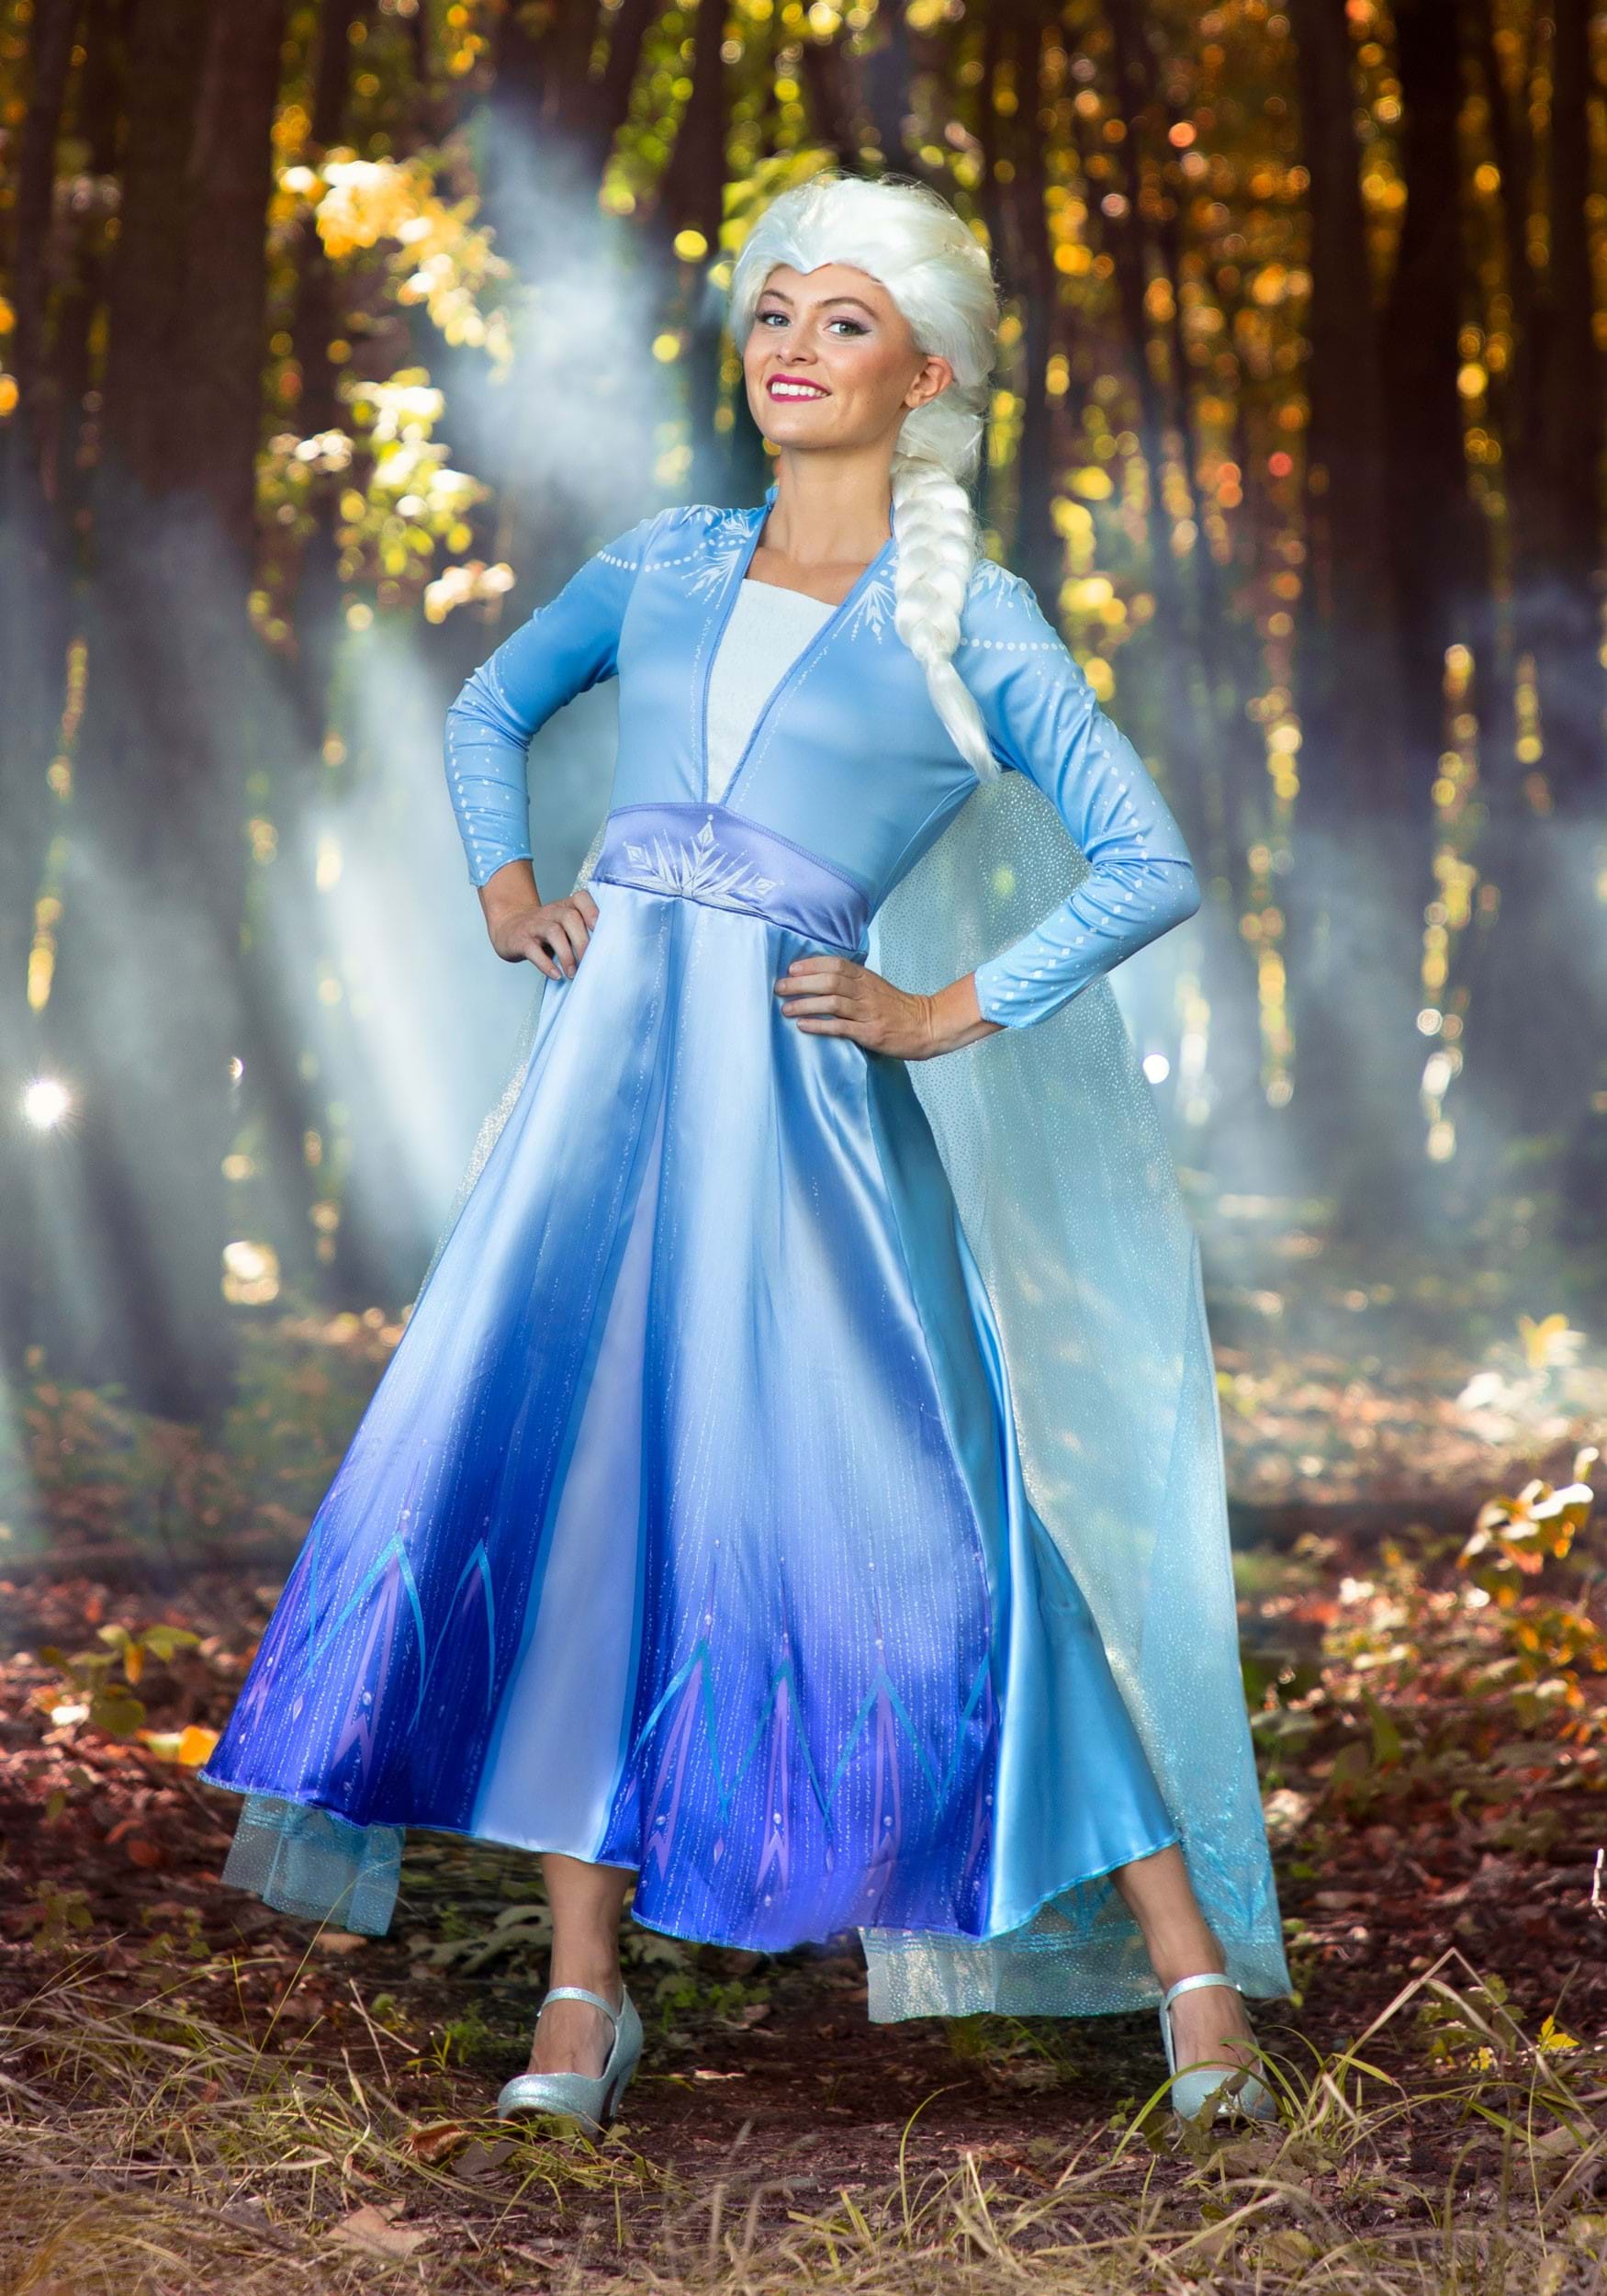 Sunisery Girls Cosplay Party Princess Frozen Elsa Anna Costume Fancy Dress  - Walmart.com